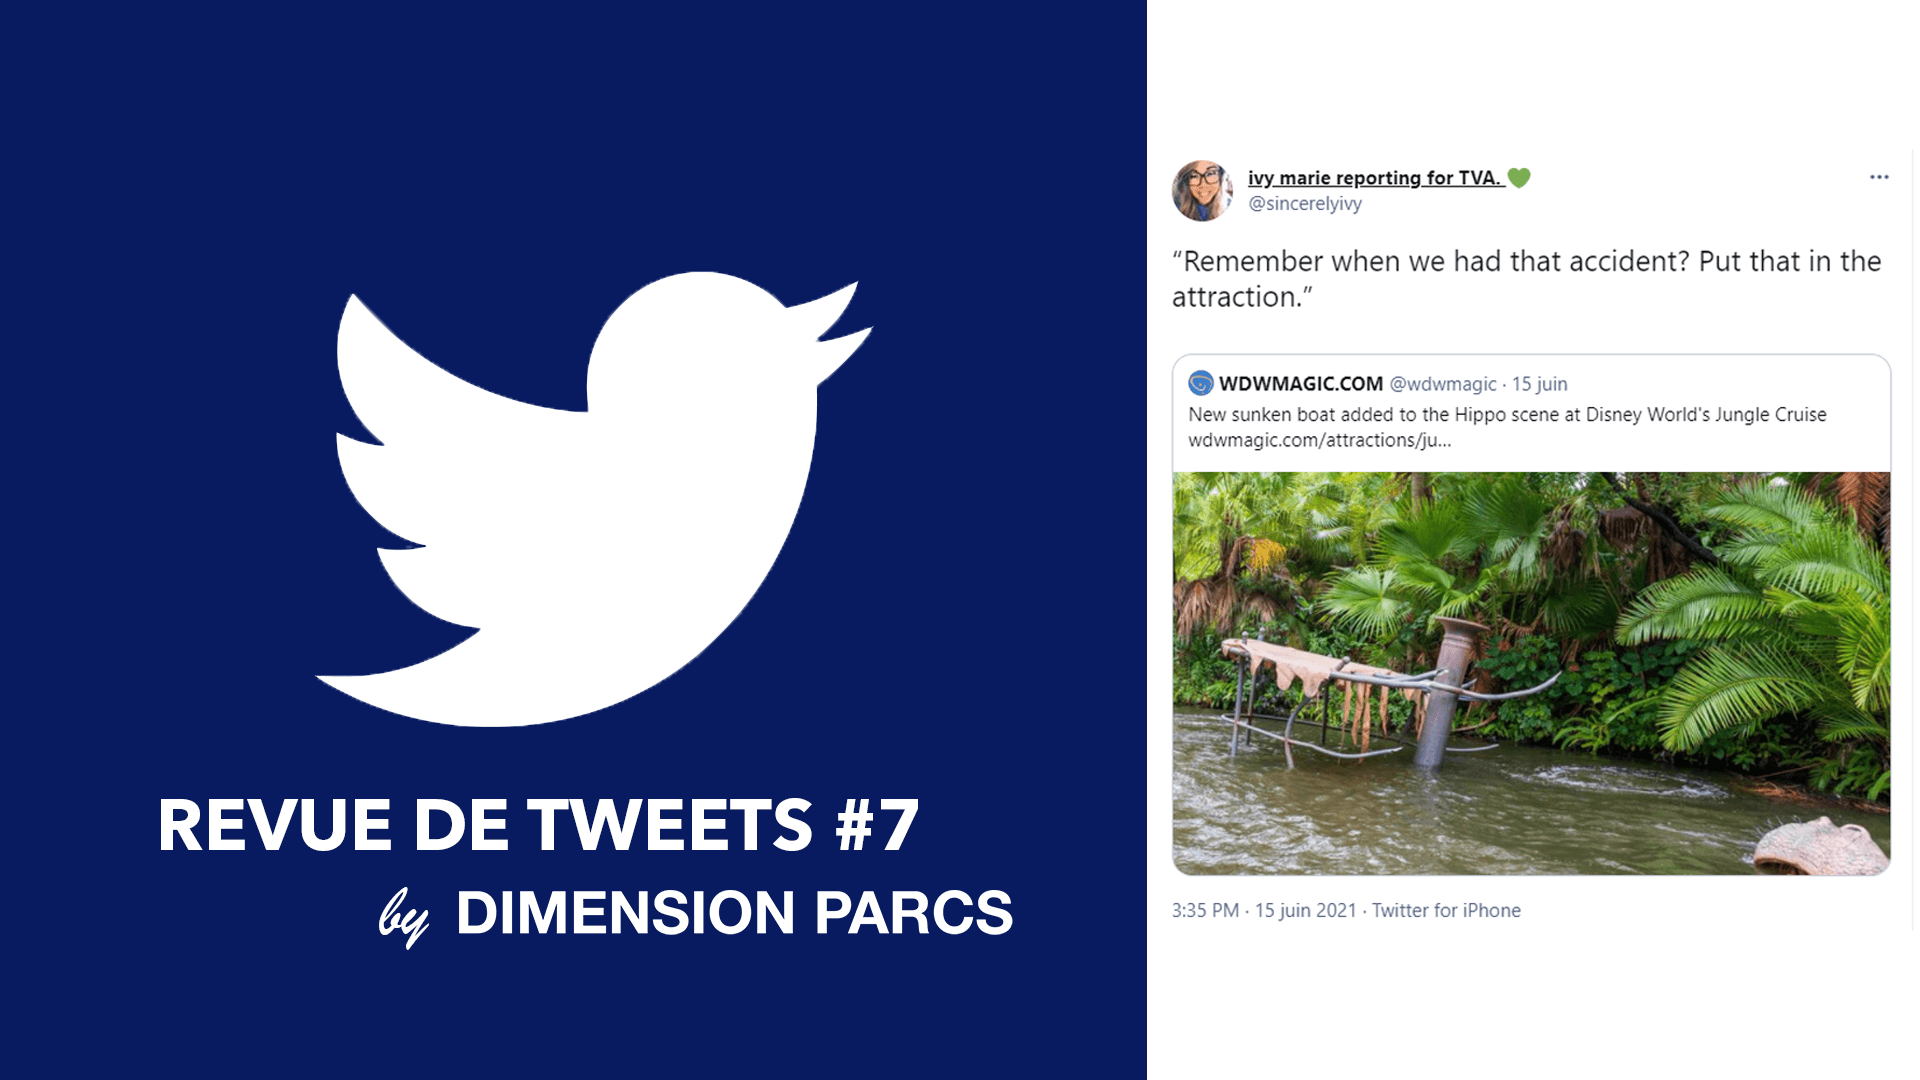 Revue de tweets #7 by Dimension Parcs